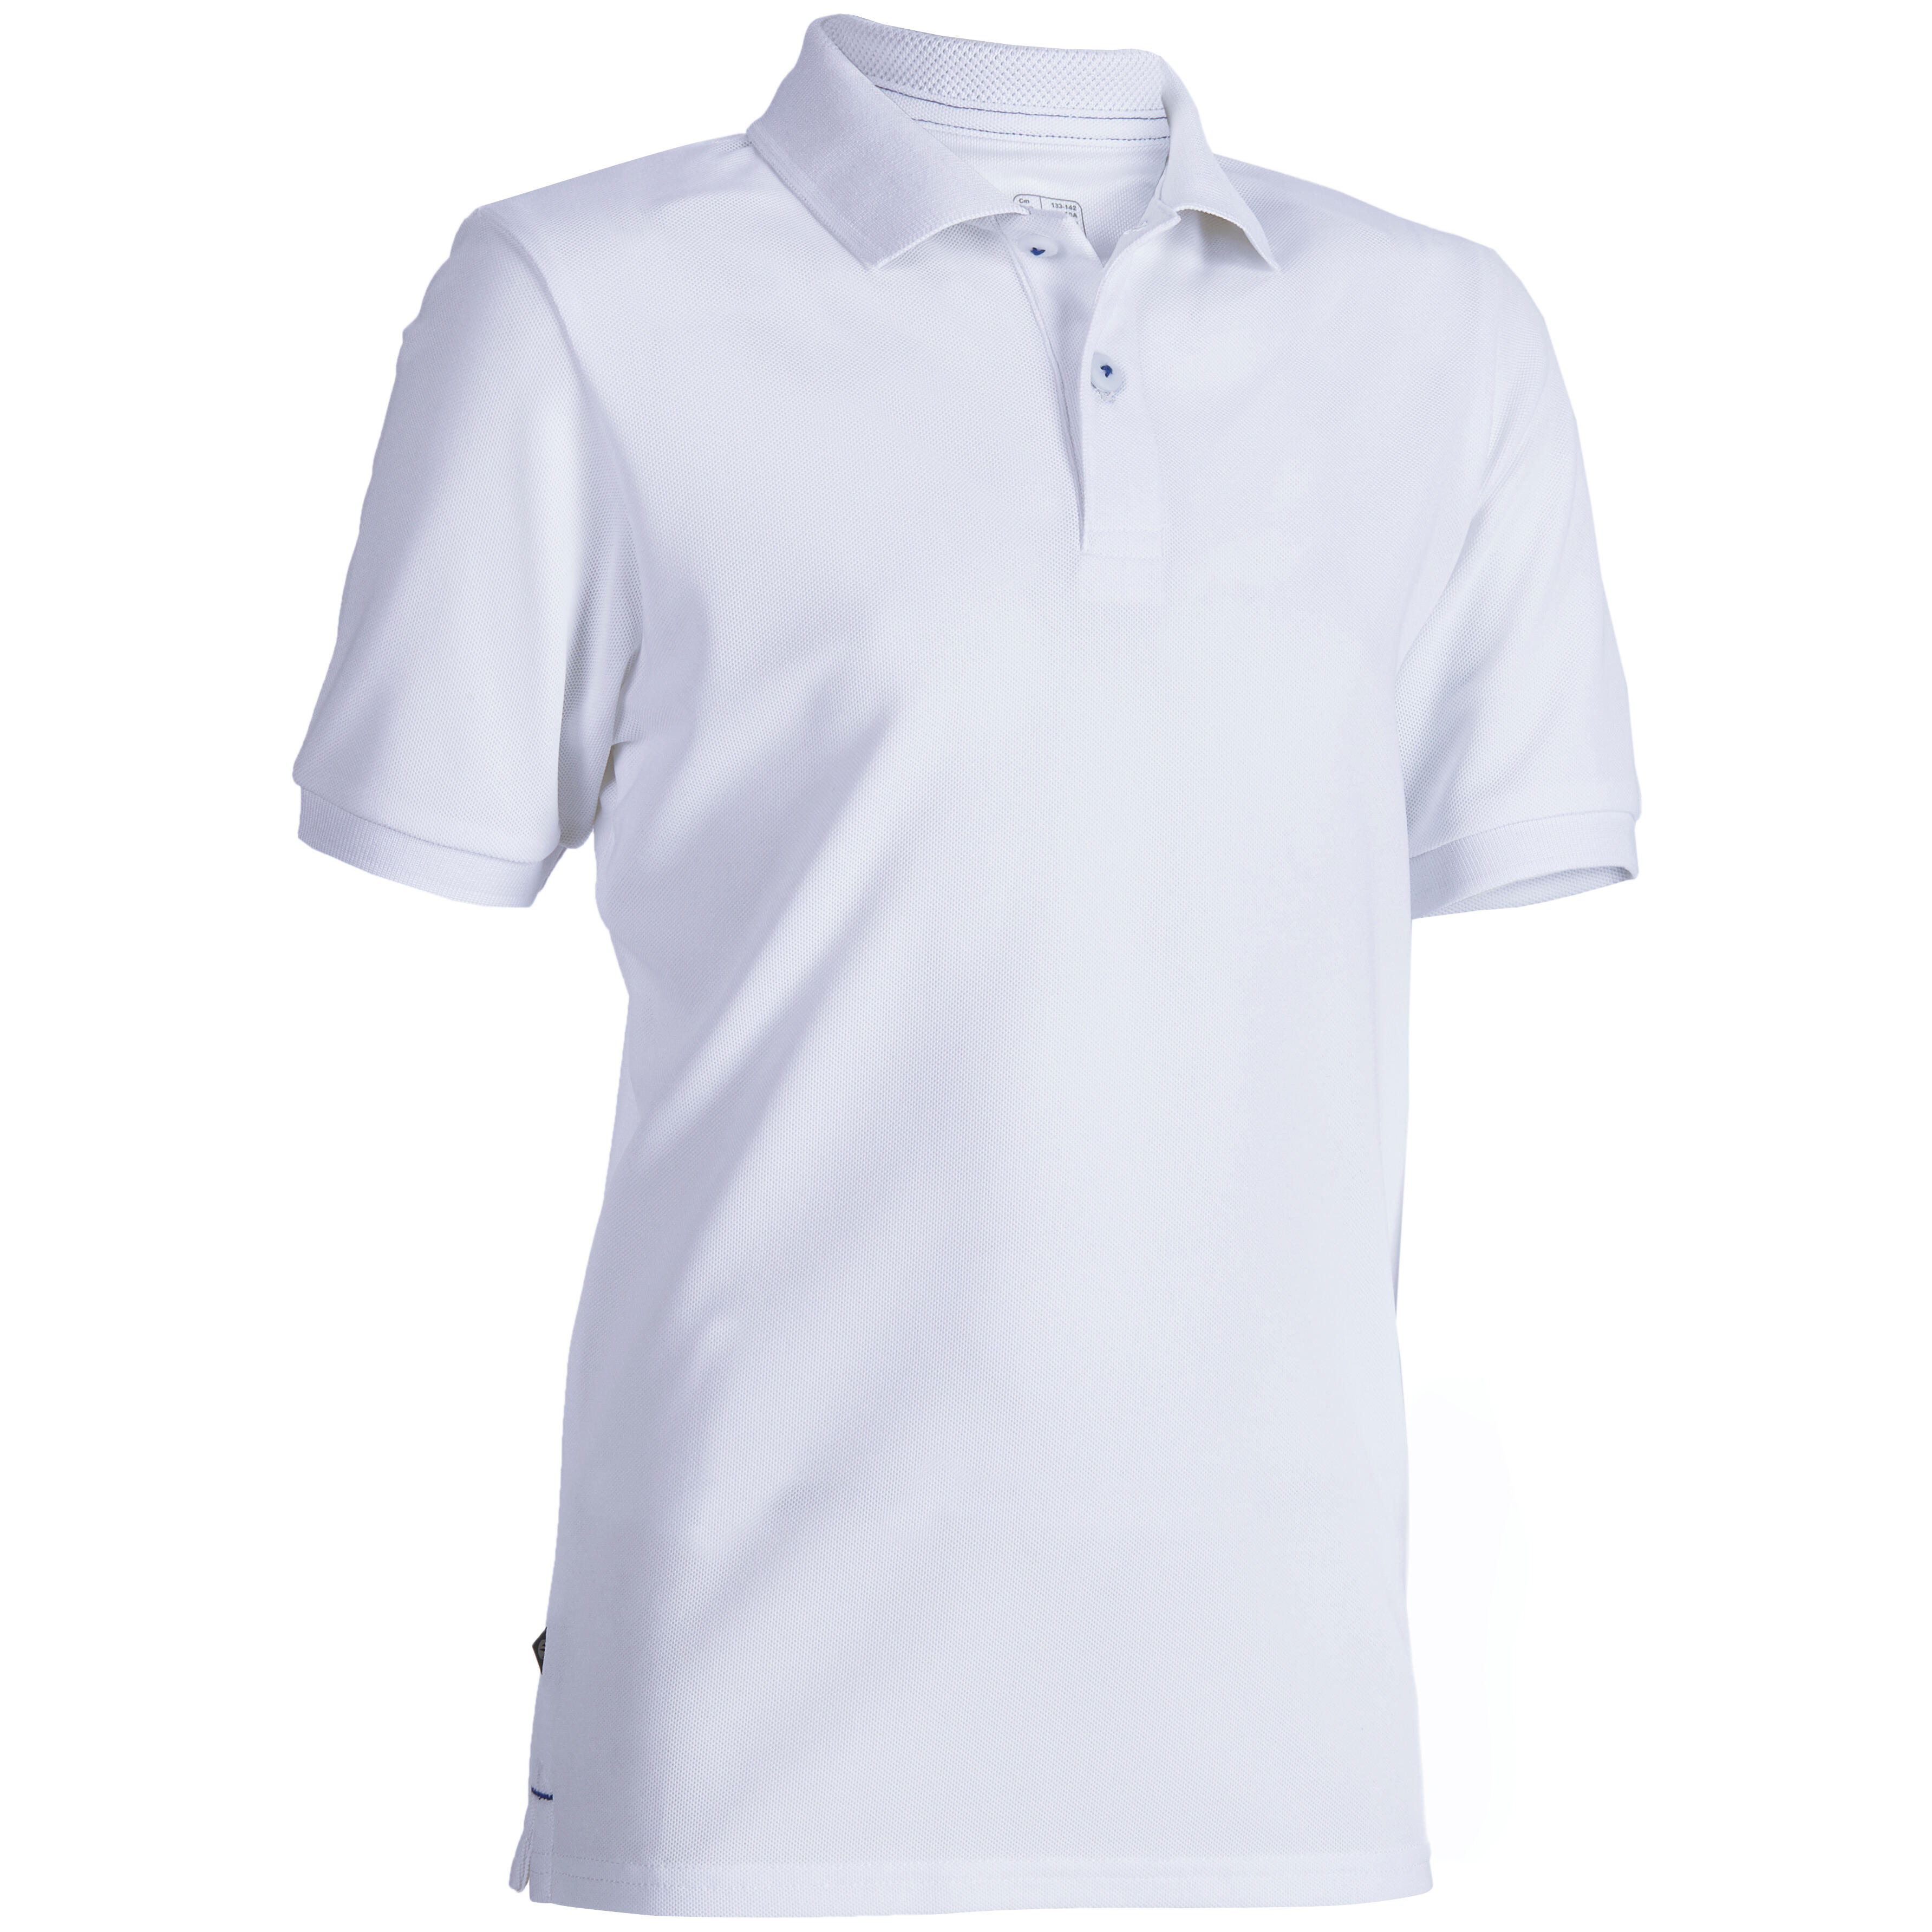 polo golf t shirt